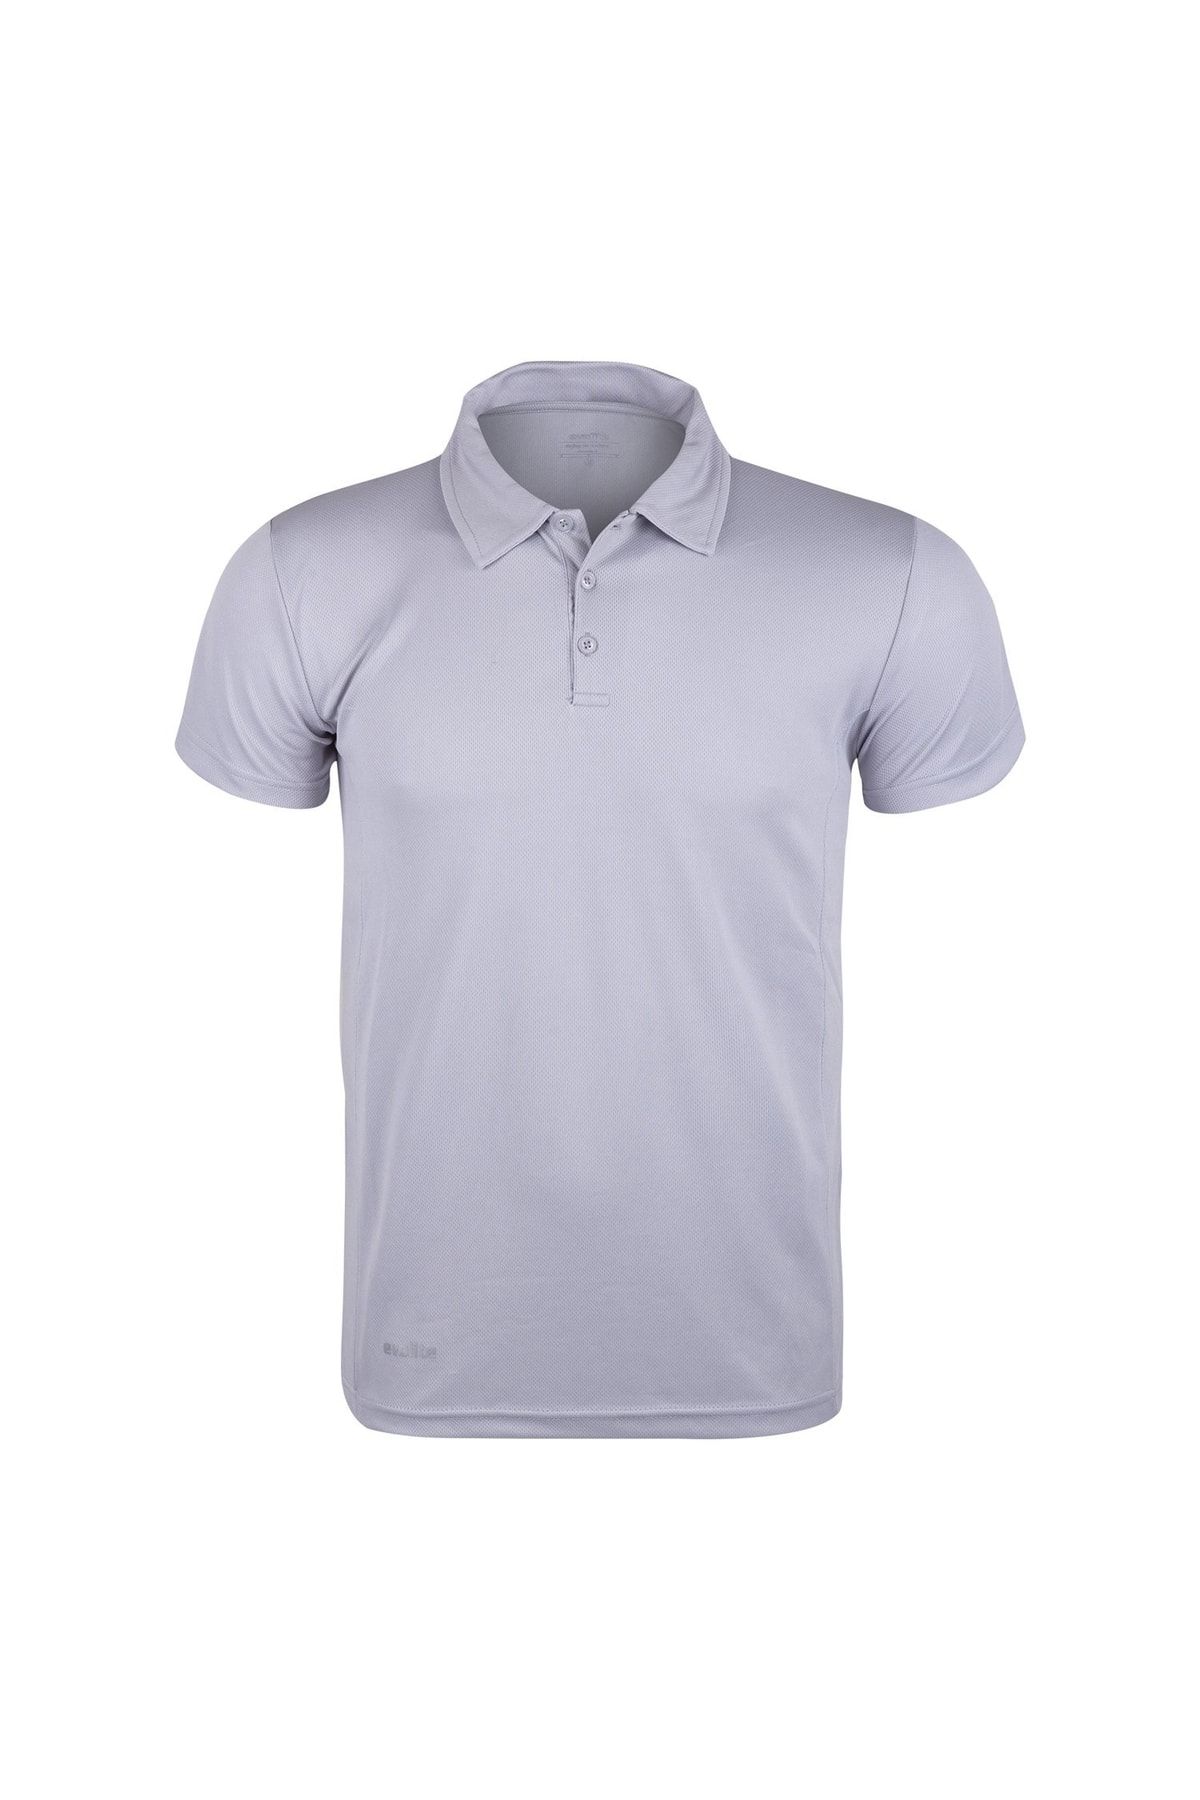 Evolite Polo Dry Termal T-shirt-gri S